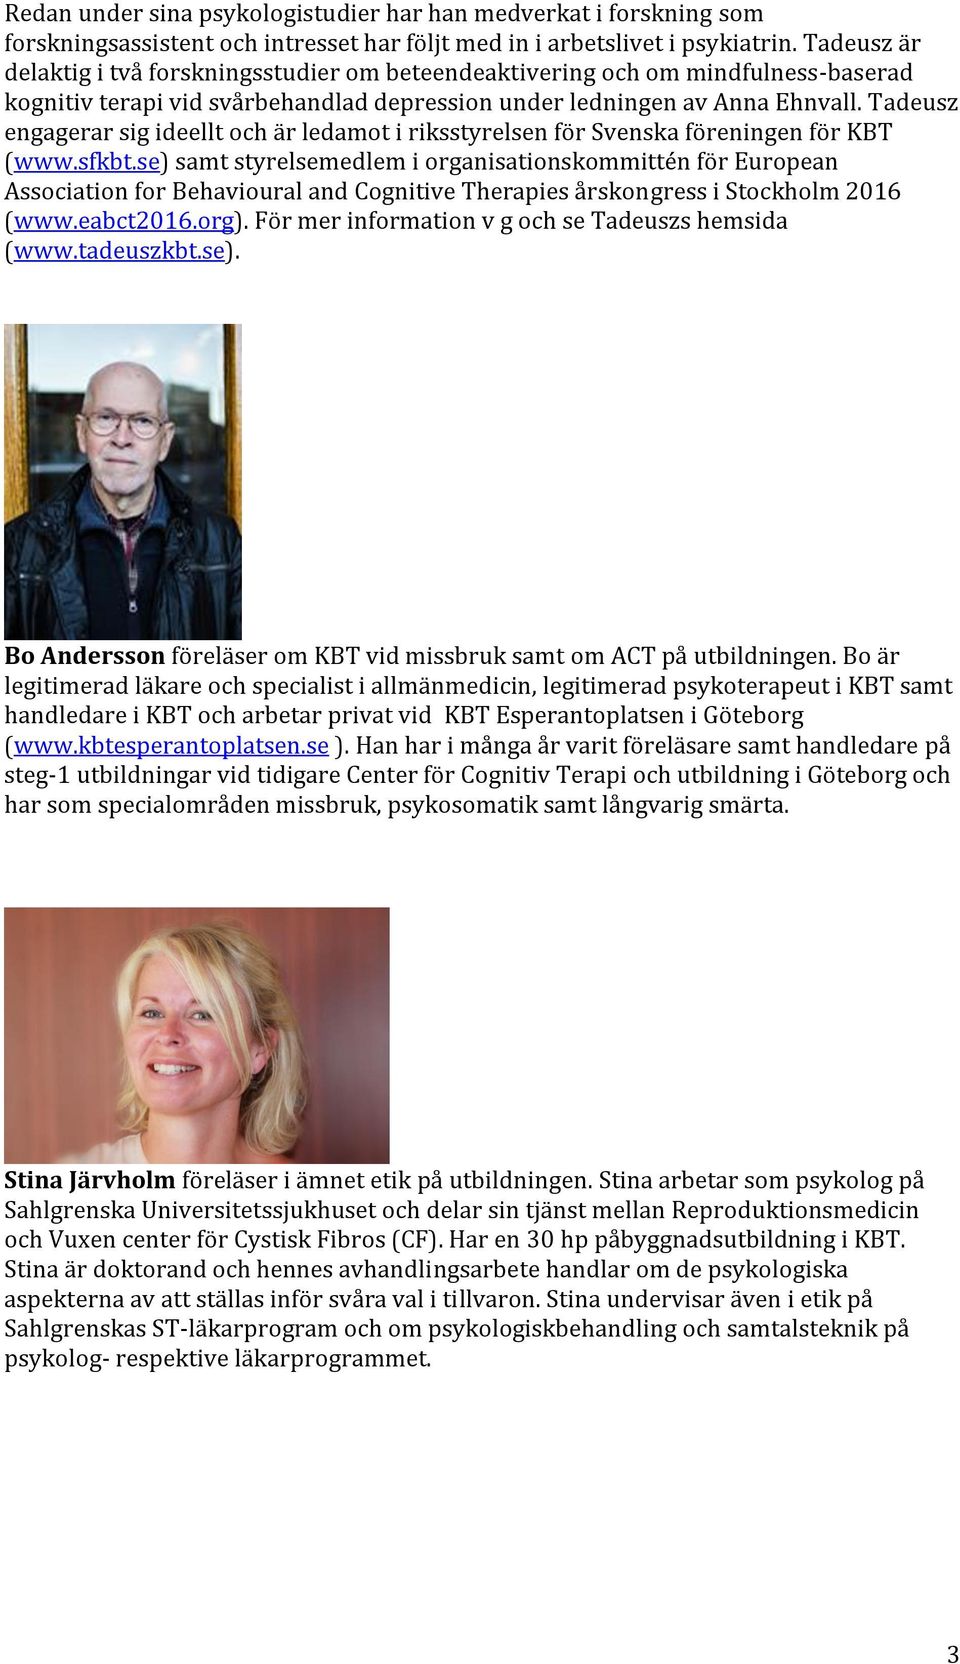 Tadeusz engagerar sig ideellt och är ledamot i riksstyrelsen för Svenska föreningen för KBT (www.sfkbt.